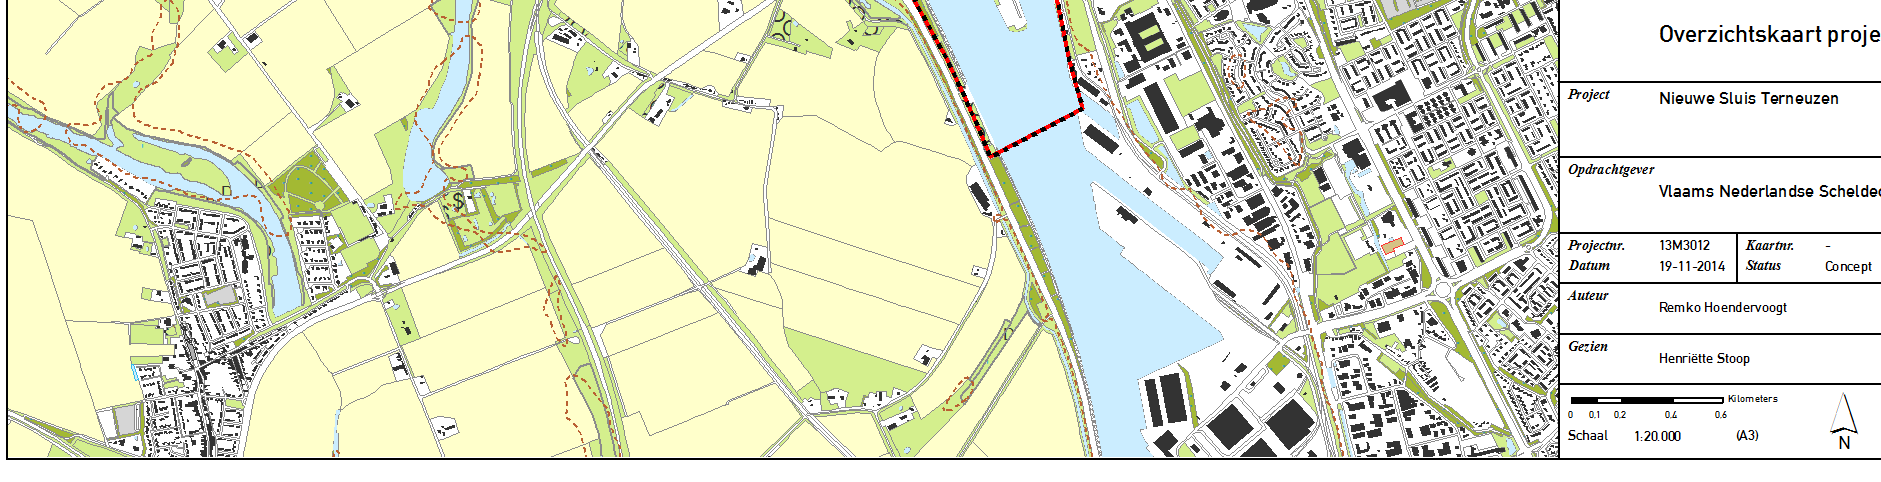 Het Kanaal Gent-Terneuzen heeft een kanaalpeil van +2,13 NAP en een waterdiepte van 13,5 m (bodem ligt op 11,37 NAP).